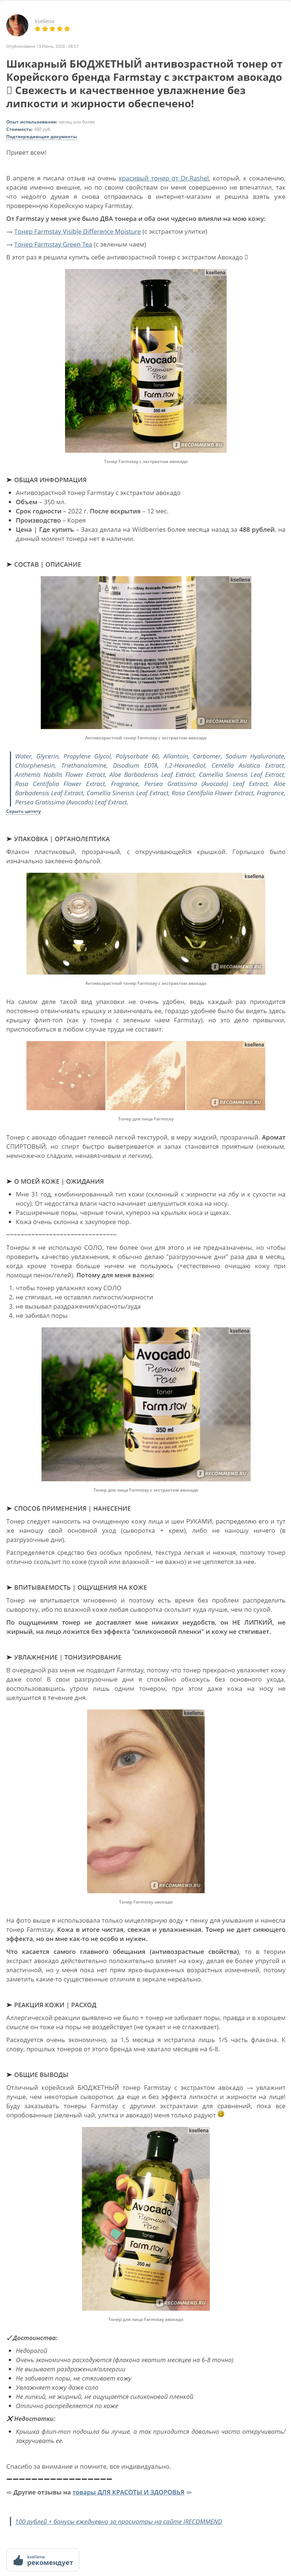 avocado_premium_pore_toner_farmstay